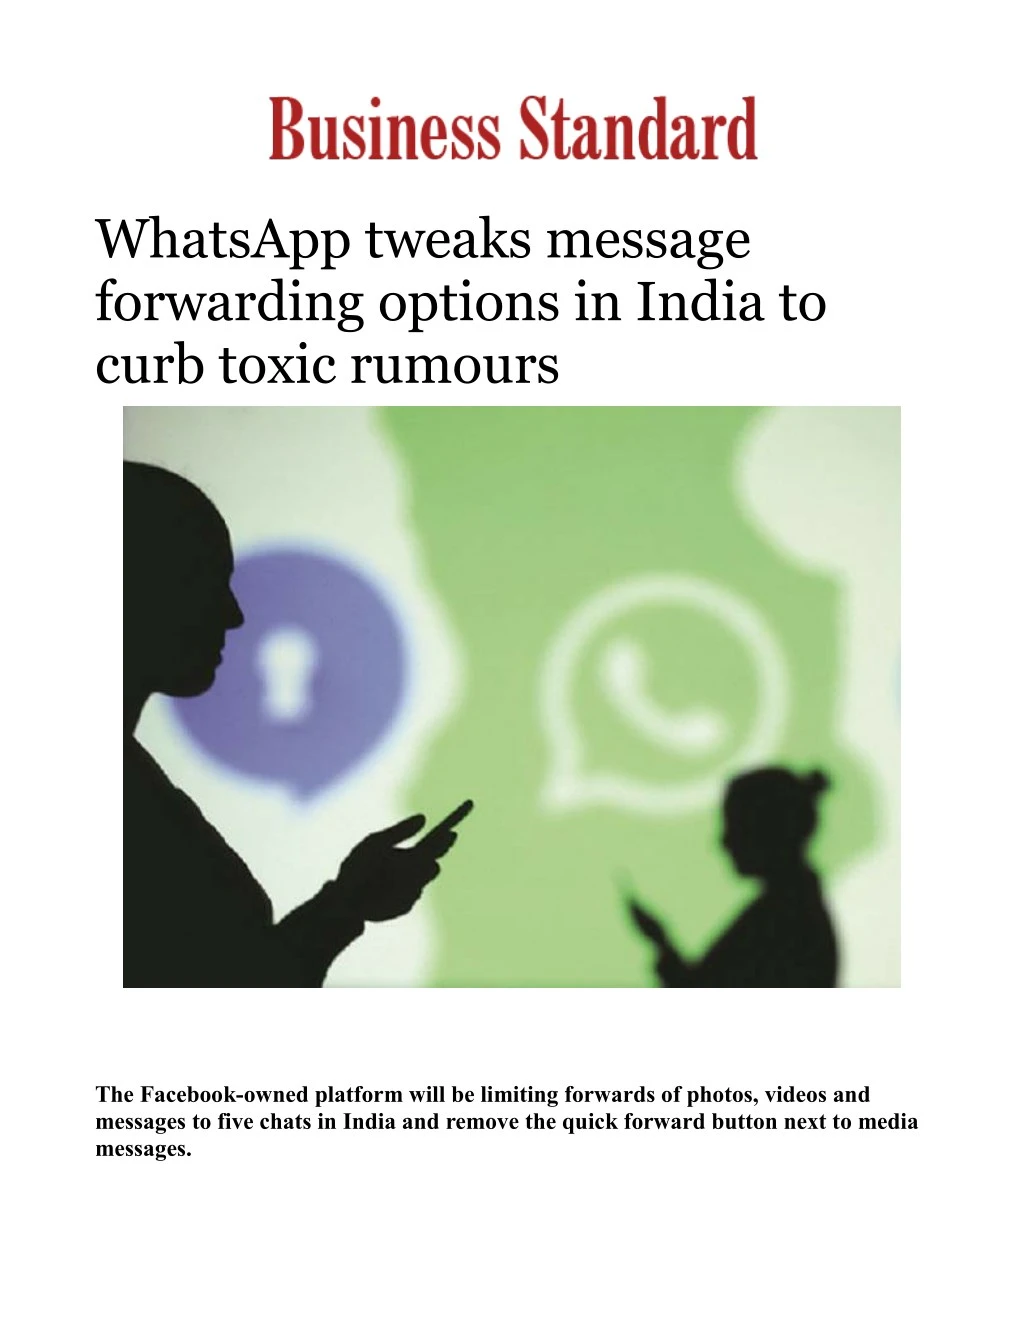 whatsapp tweaks message forwarding options